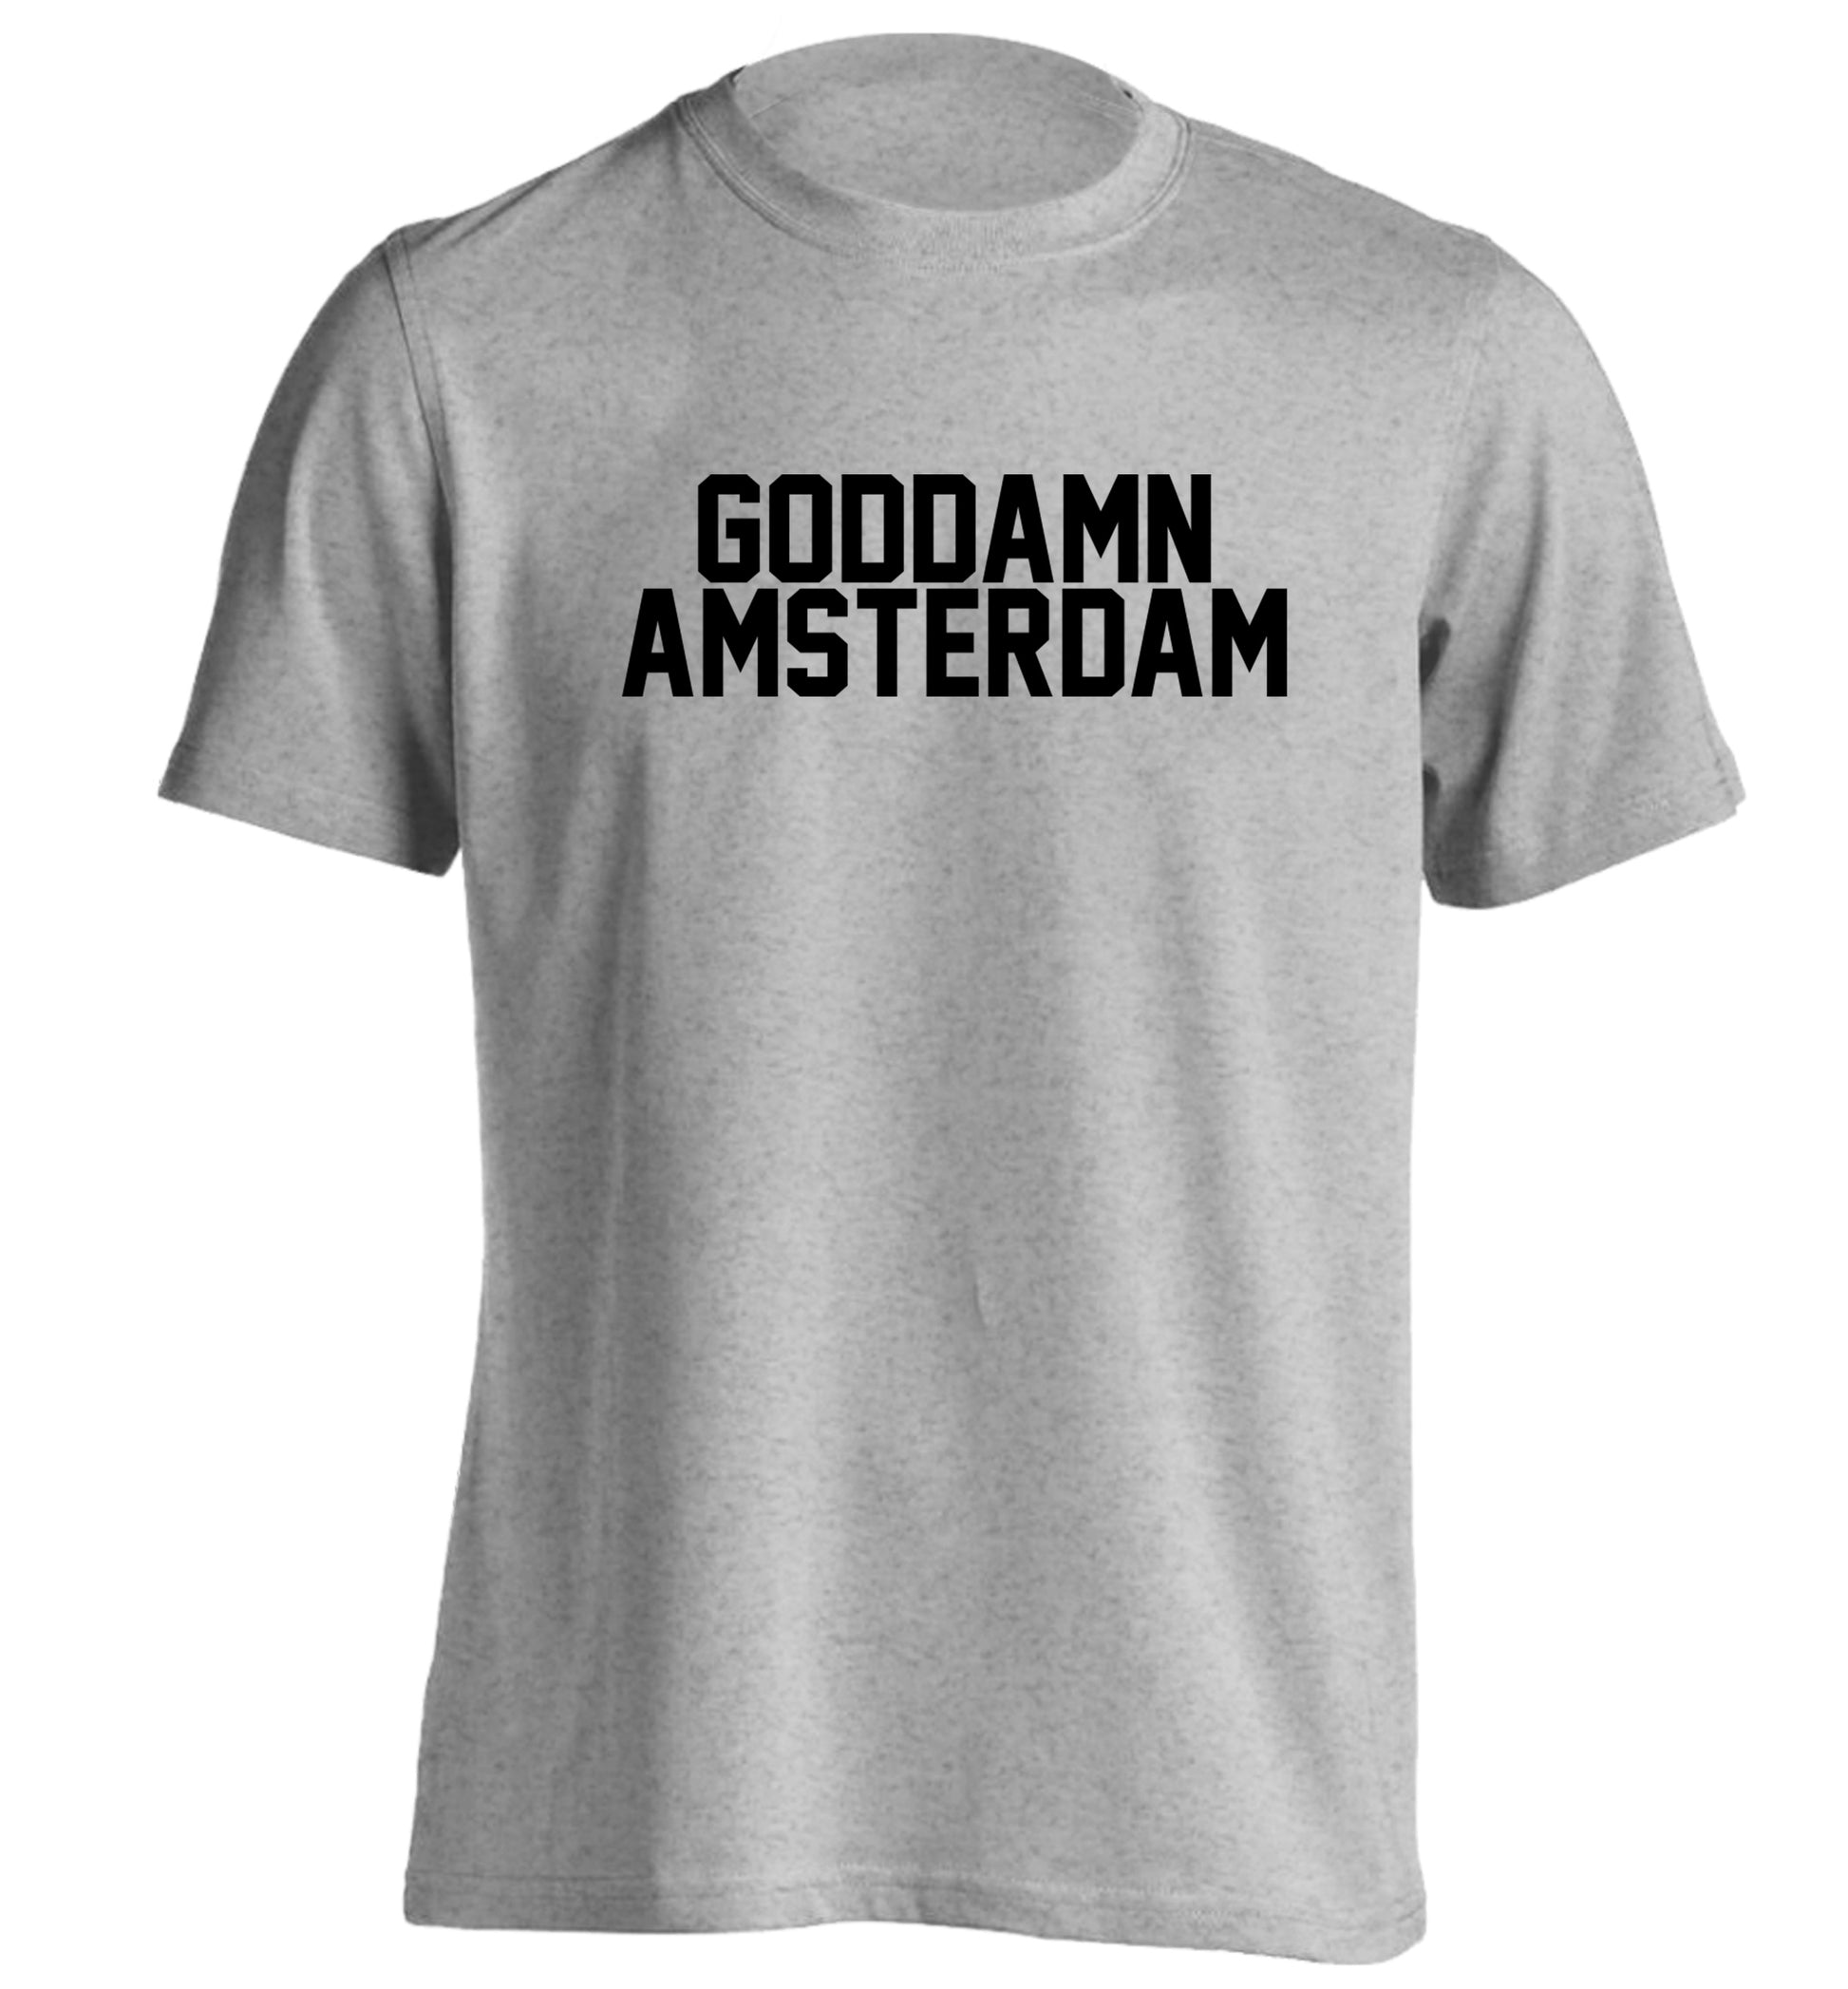 Goddamn Amsterdam adults unisex grey Tshirt 2XL